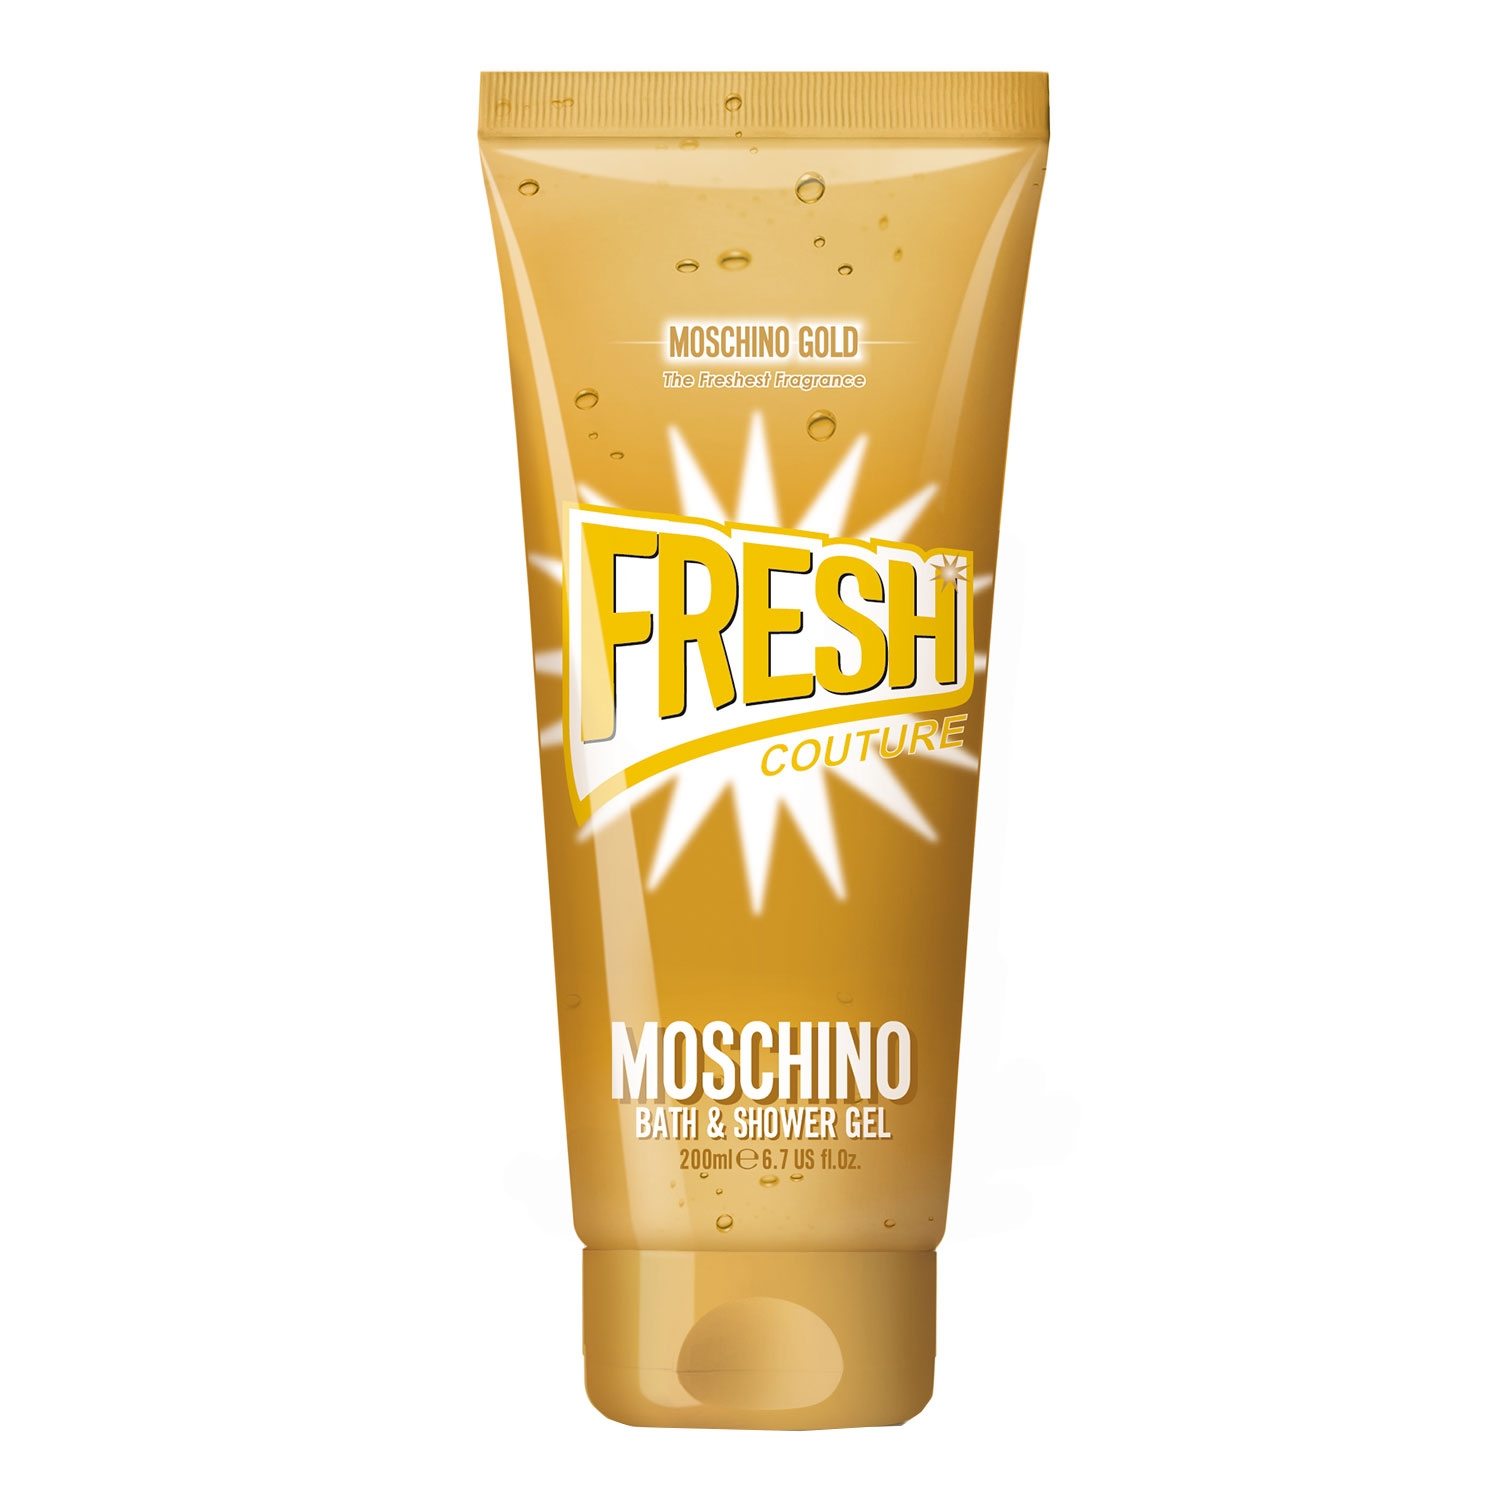 Produktbild von Gold Fresh Couture - The freshest Bath & Shower Gel